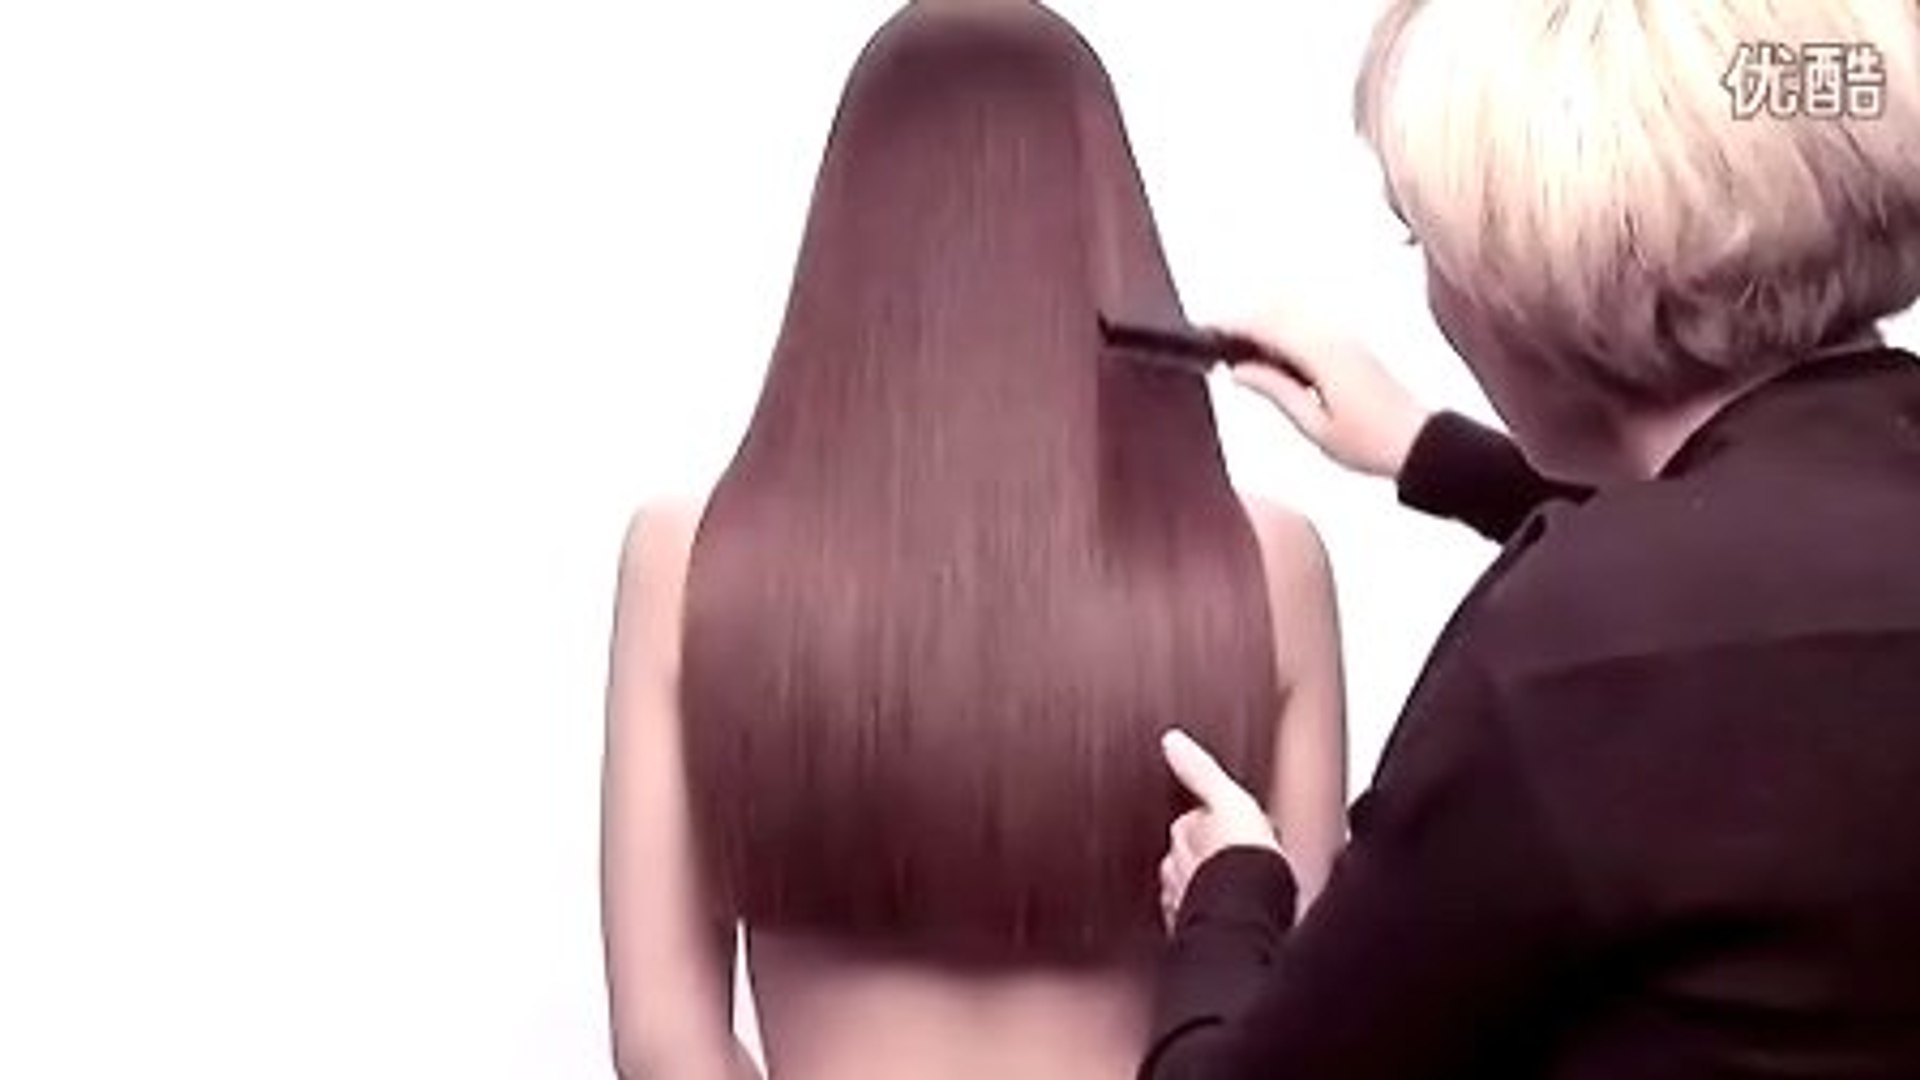 Haircut Videos - Long hair cut - long hair chopped short hair cut - video  Dailymotion